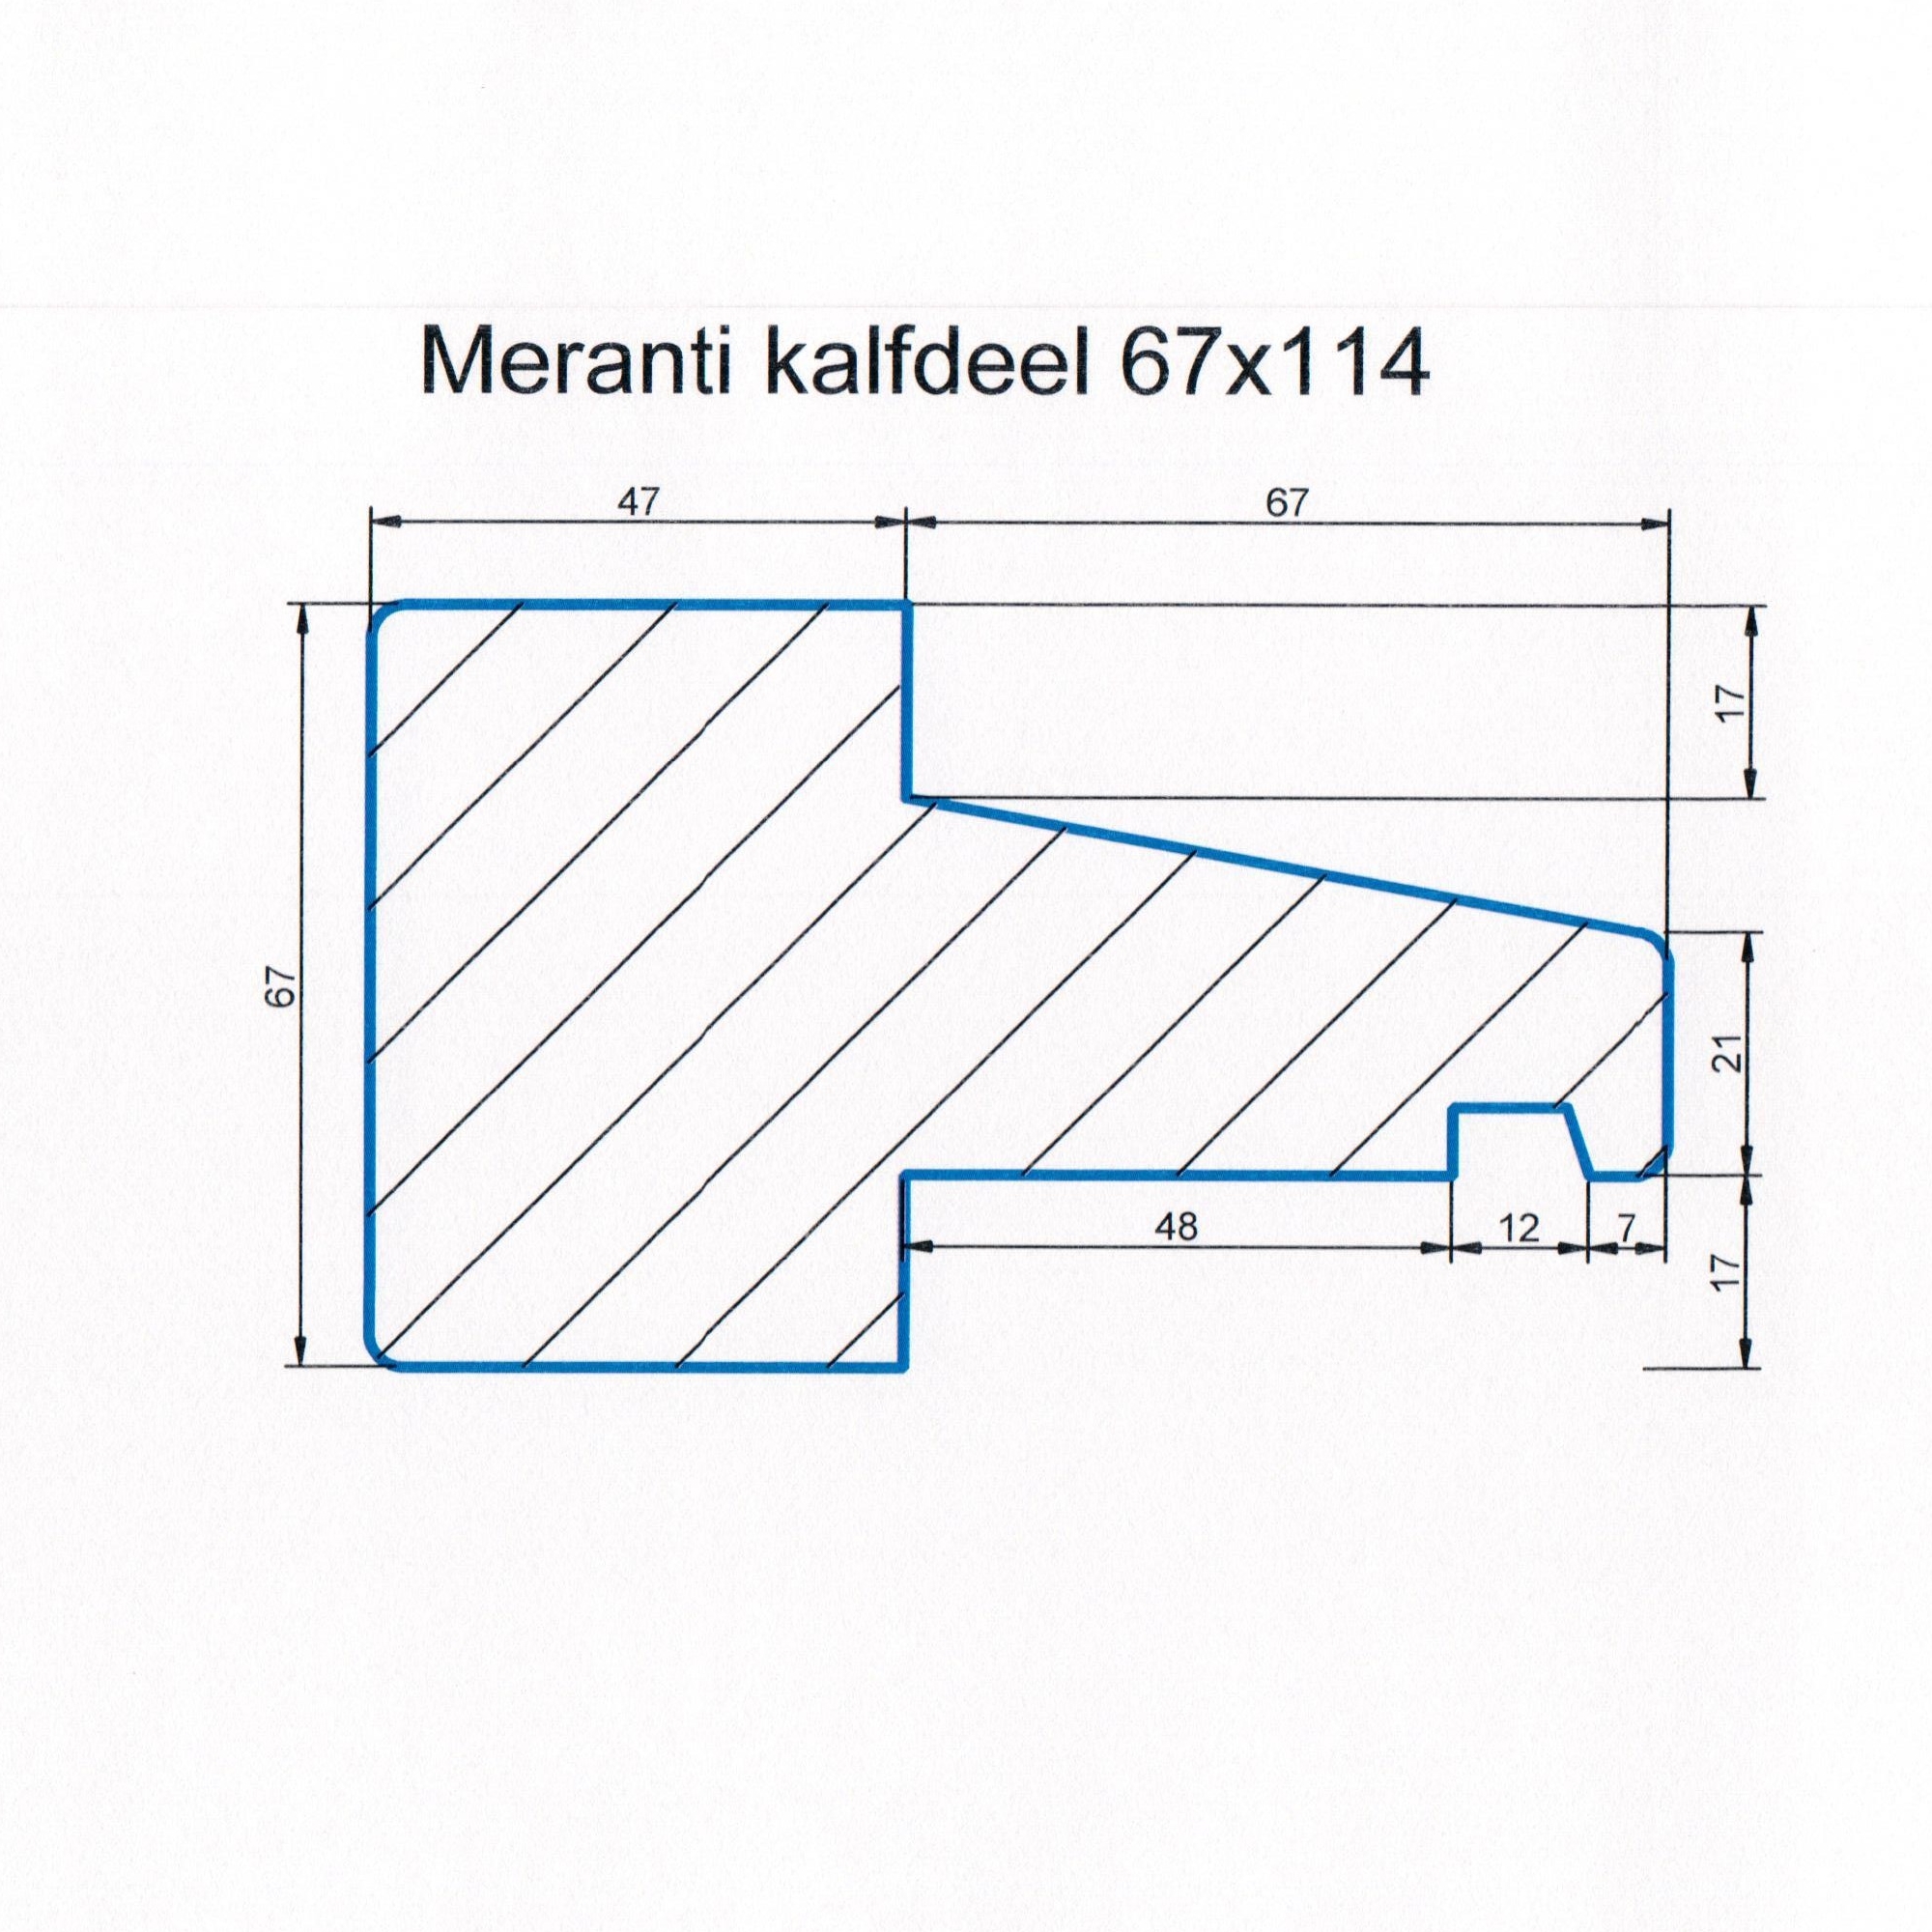 Meranti 67x114 kozijnhout kalfdeel L=1200 mm